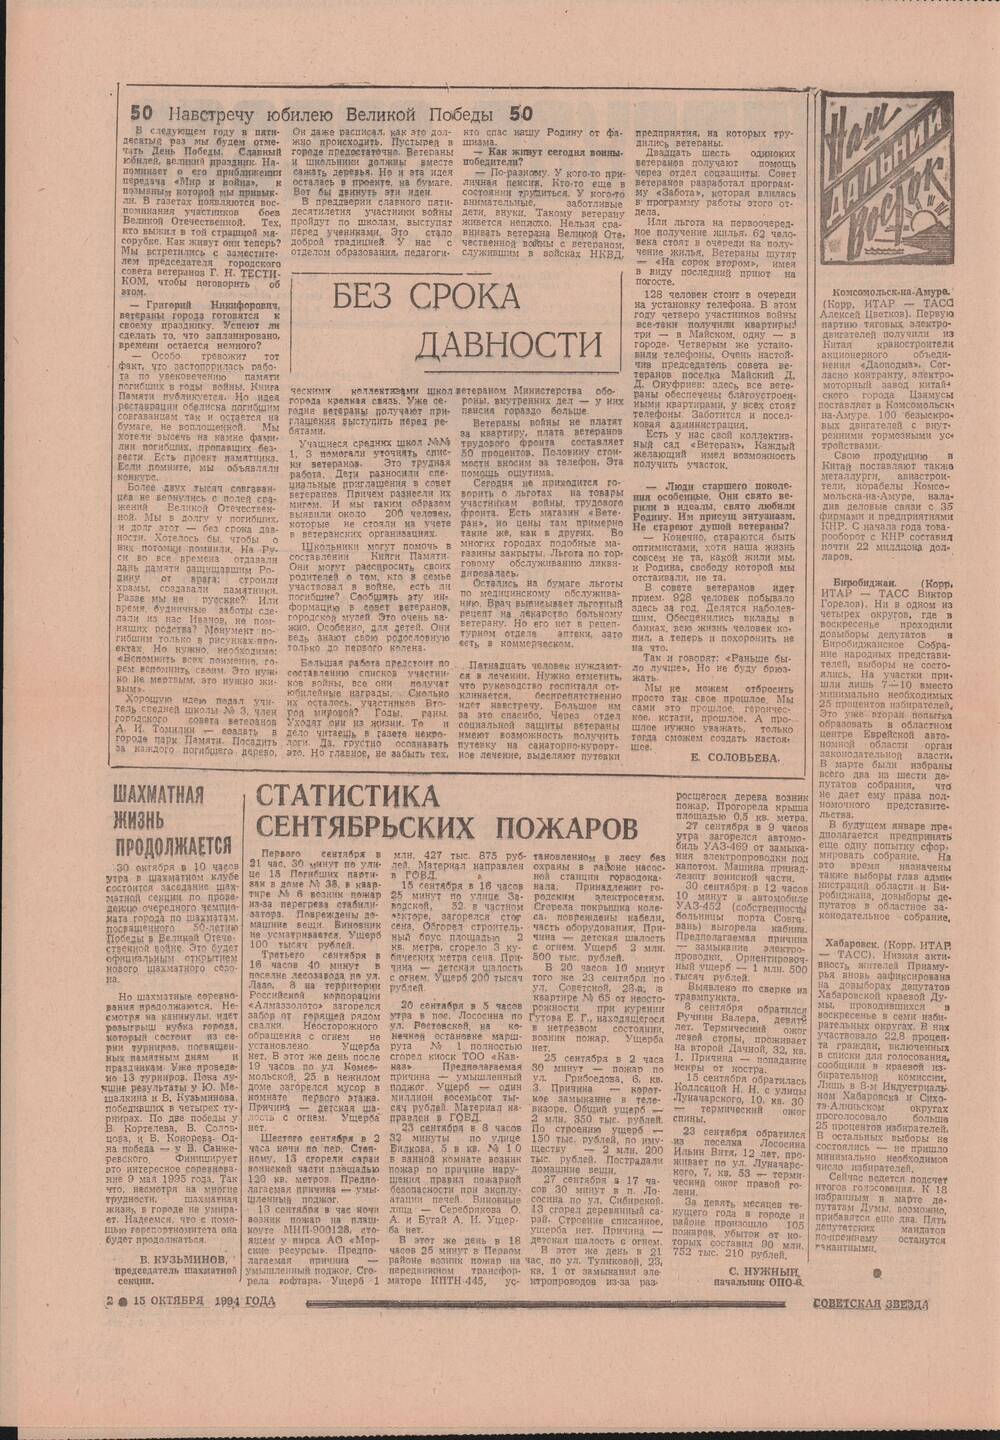 Газета «Советская звезда» № 199 (14448) от 15.10.1994 под рубрикой «50 лет Великой Победы».